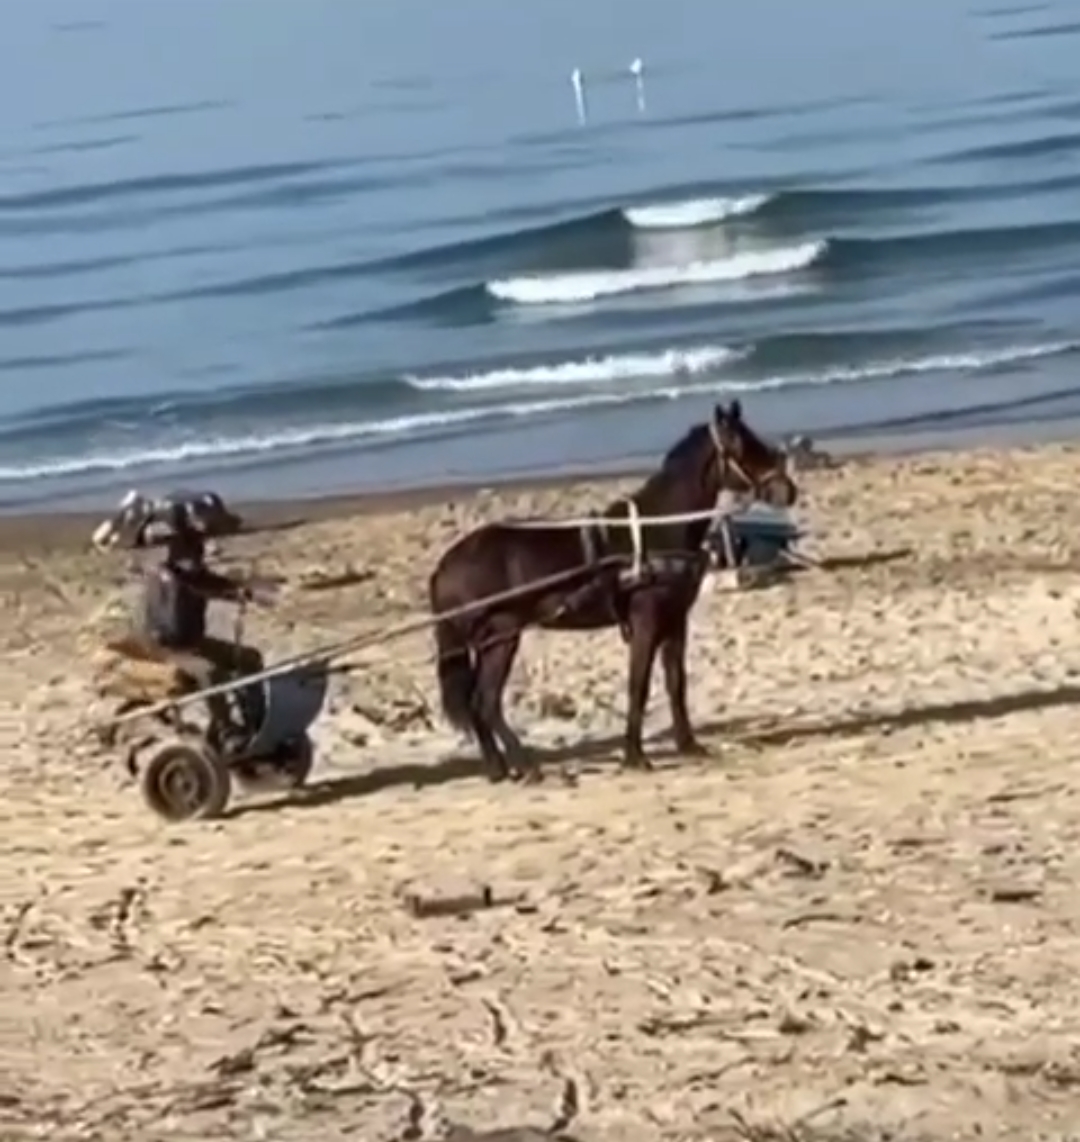 POZZUOLI/ Cavallo maltrattato sulla spiaggia di Licola mare, la denuncia: «Corse clandestine da fermare»